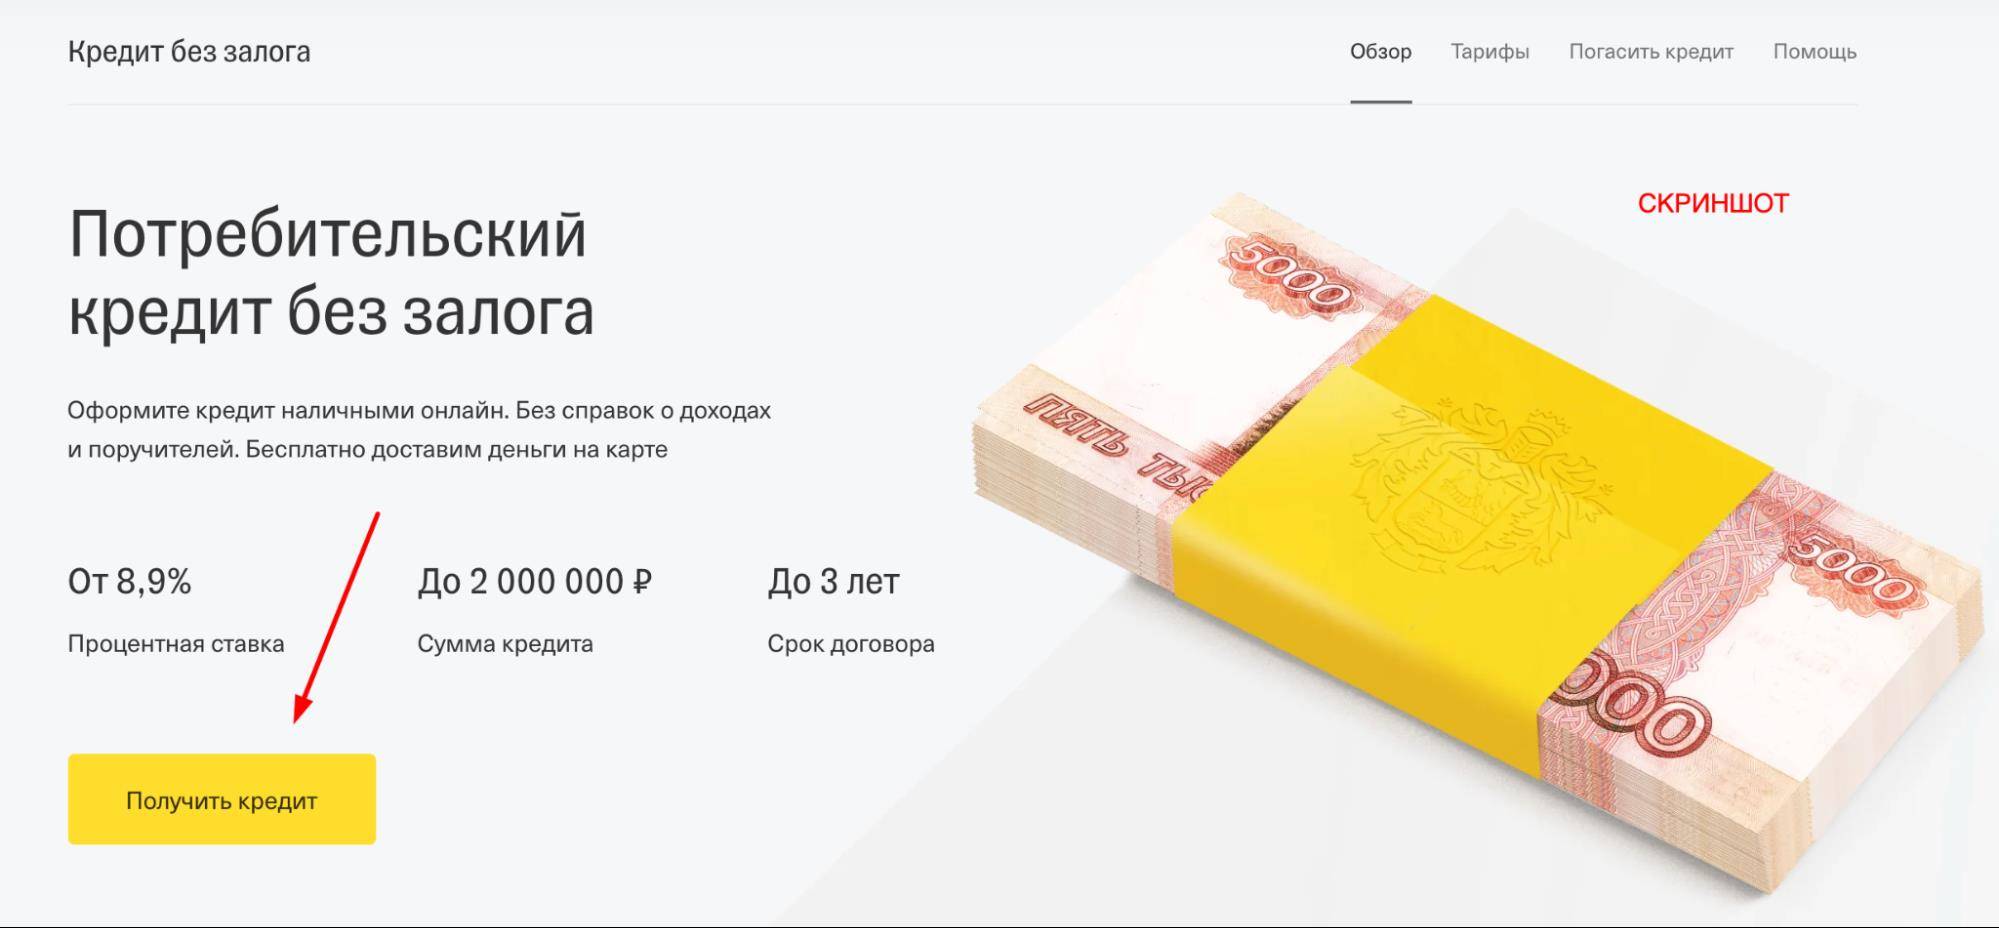 Кредиты на 2000000 рублей без поручителей и залога